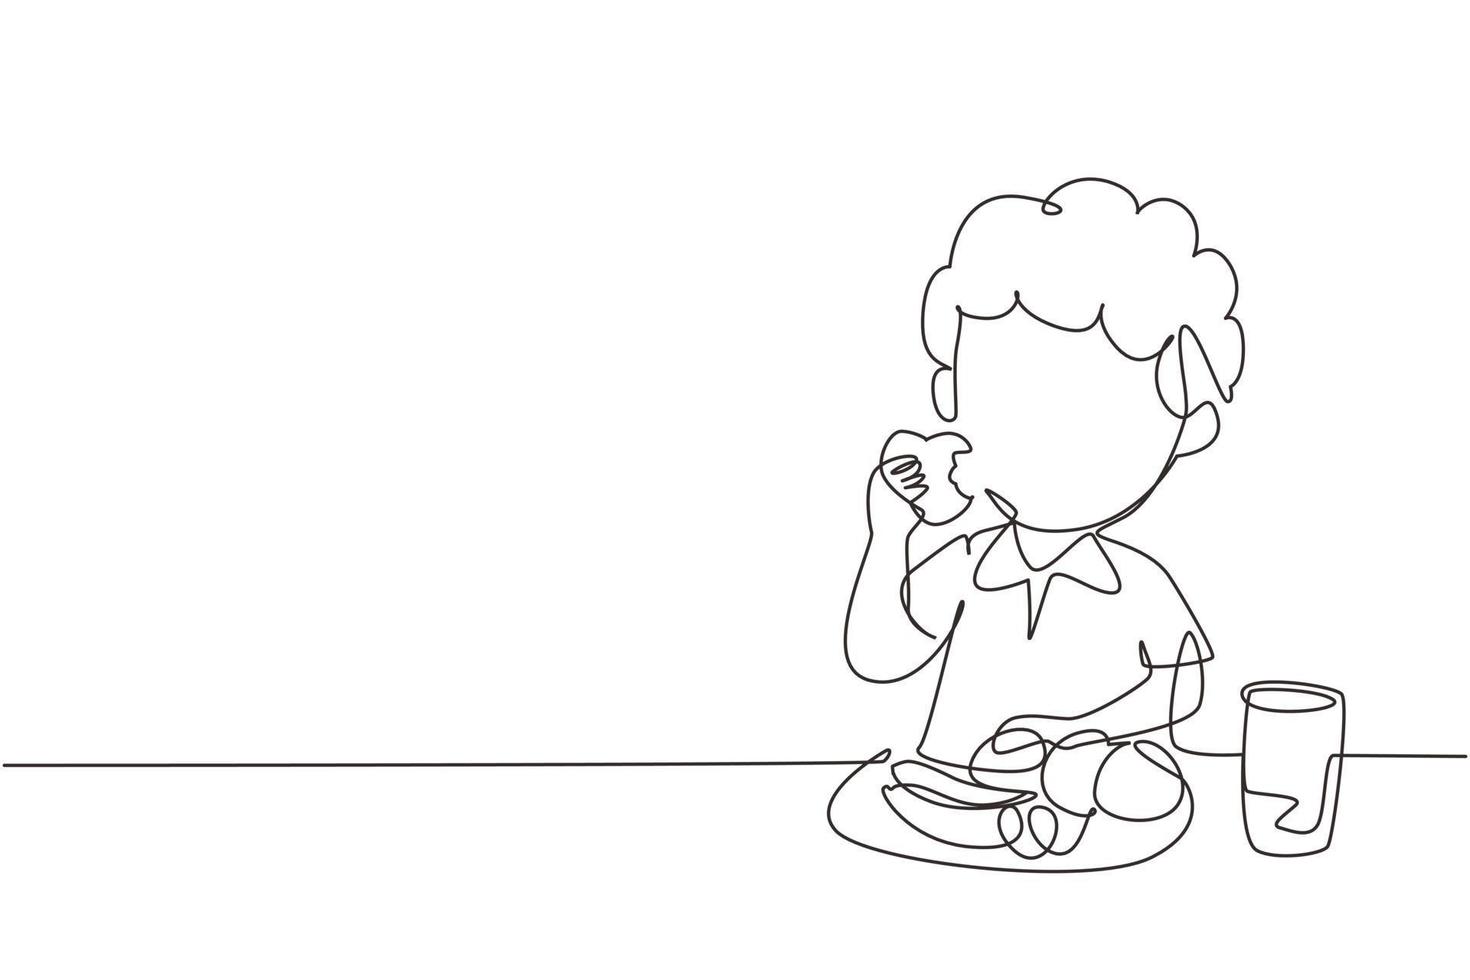 niño de dibujo de una sola línea comiendo fruta. sentado en la mesa comiendo manzana. sandía y plátano en bandeja colocada sobre la mesa en casa. alimentos saludables para niños. vector gráfico de diseño de dibujo de línea continua moderna